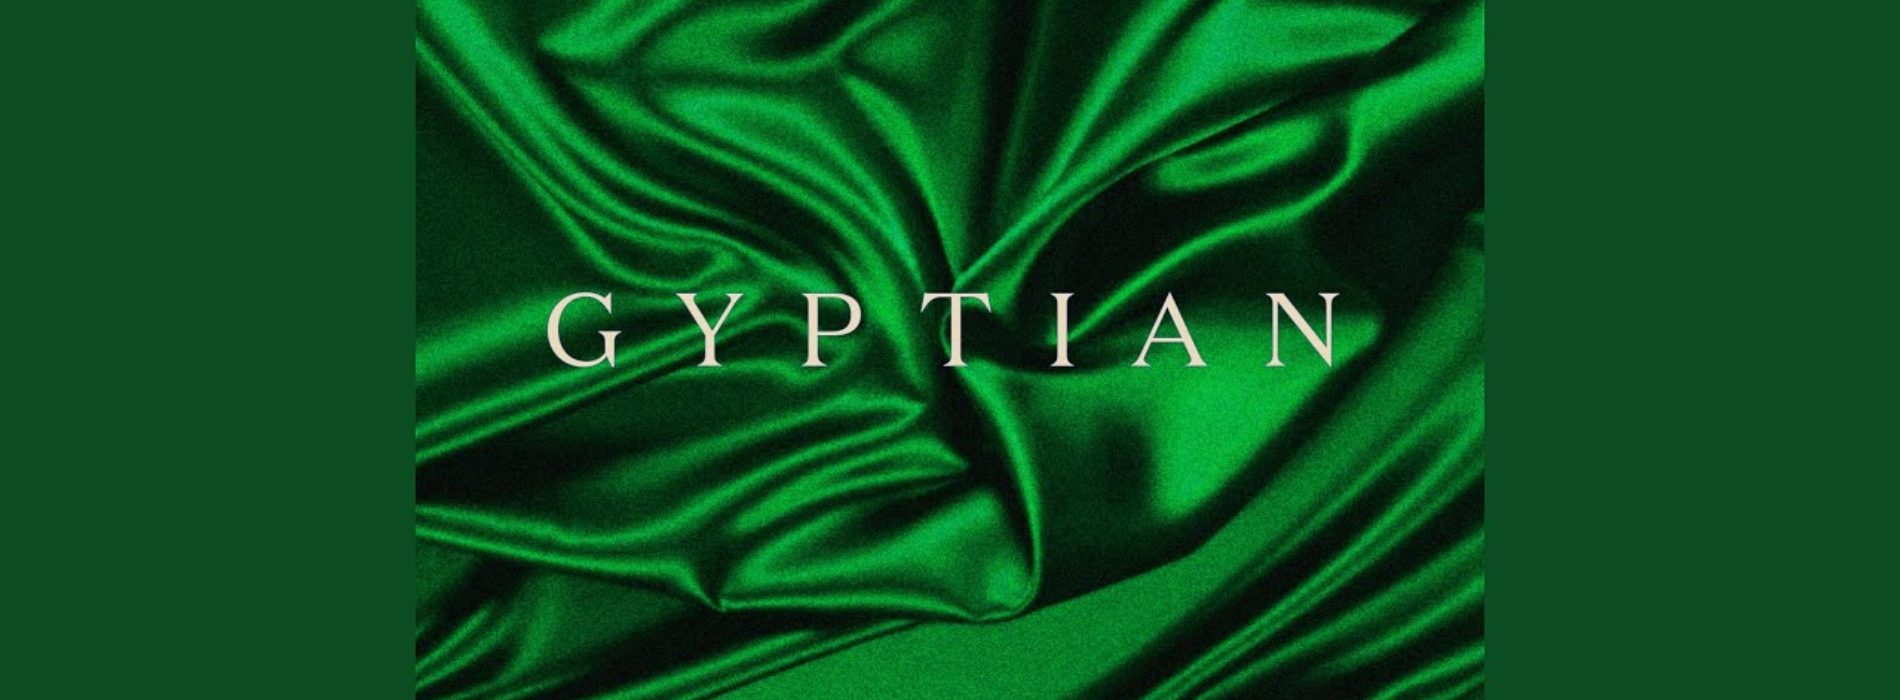 Gyptian – Warm & Easy | Official Audio – Novembre 2020